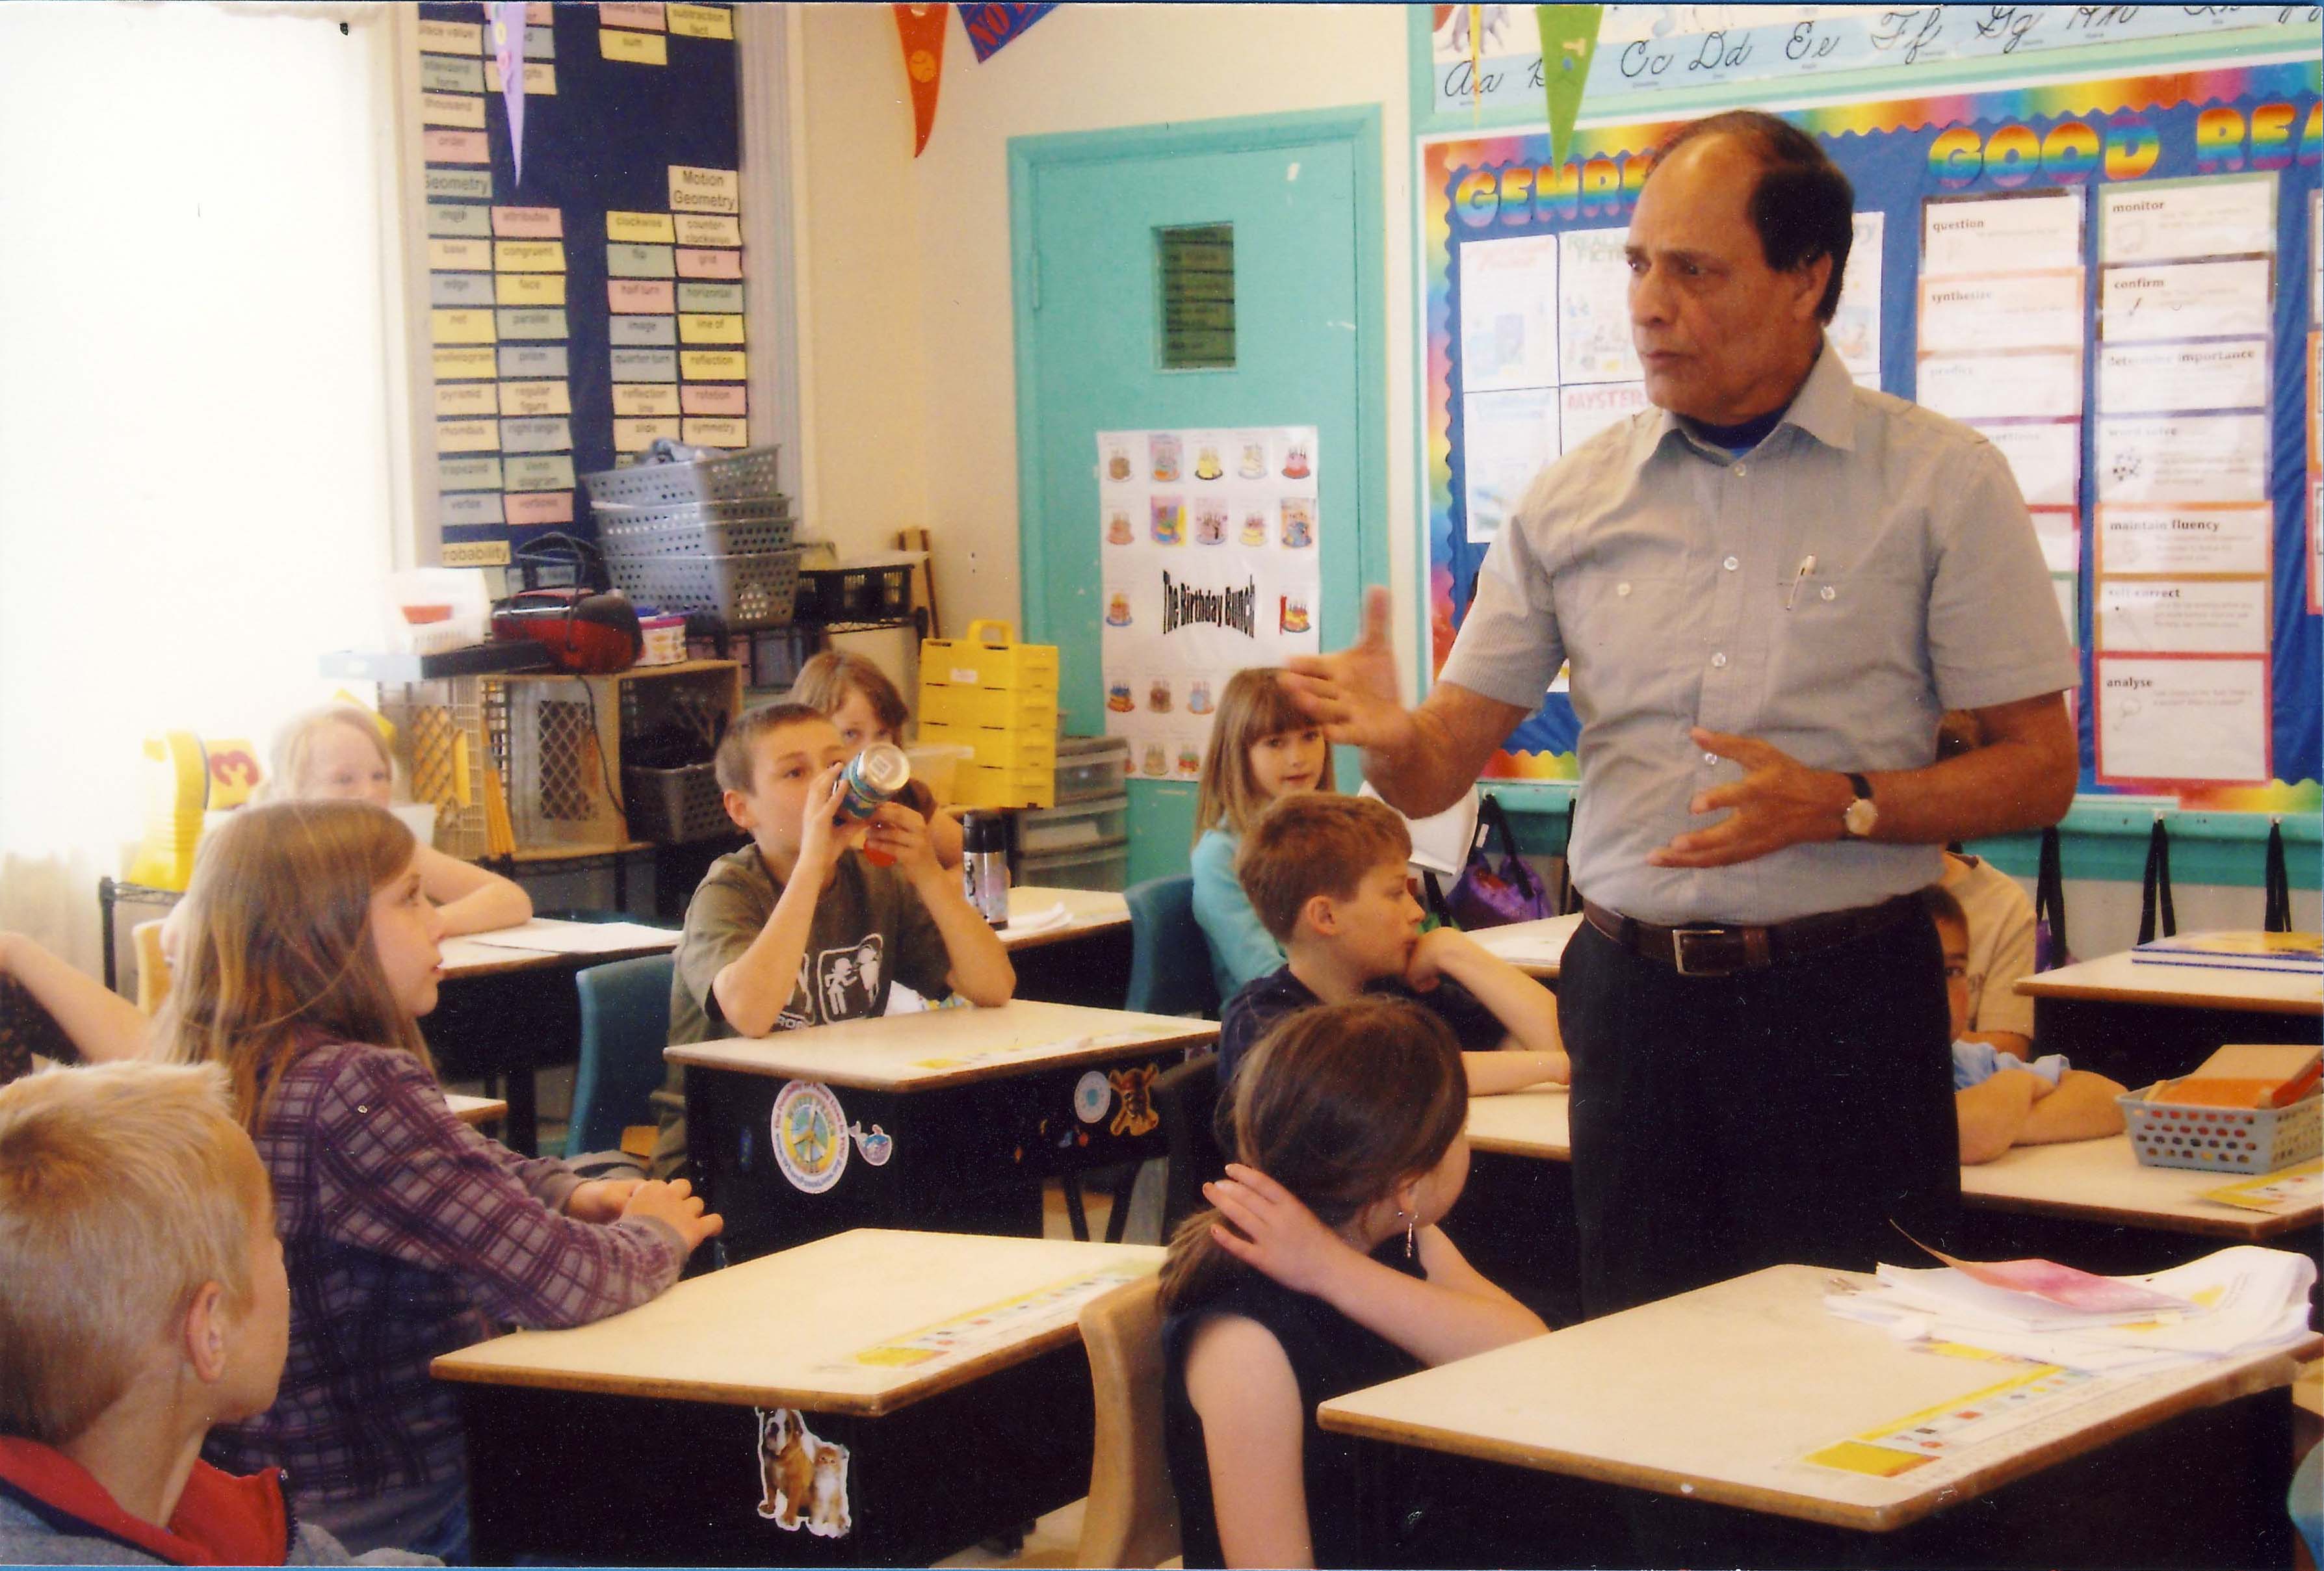 Un homme enseigne à une classe de jeunes élèves.